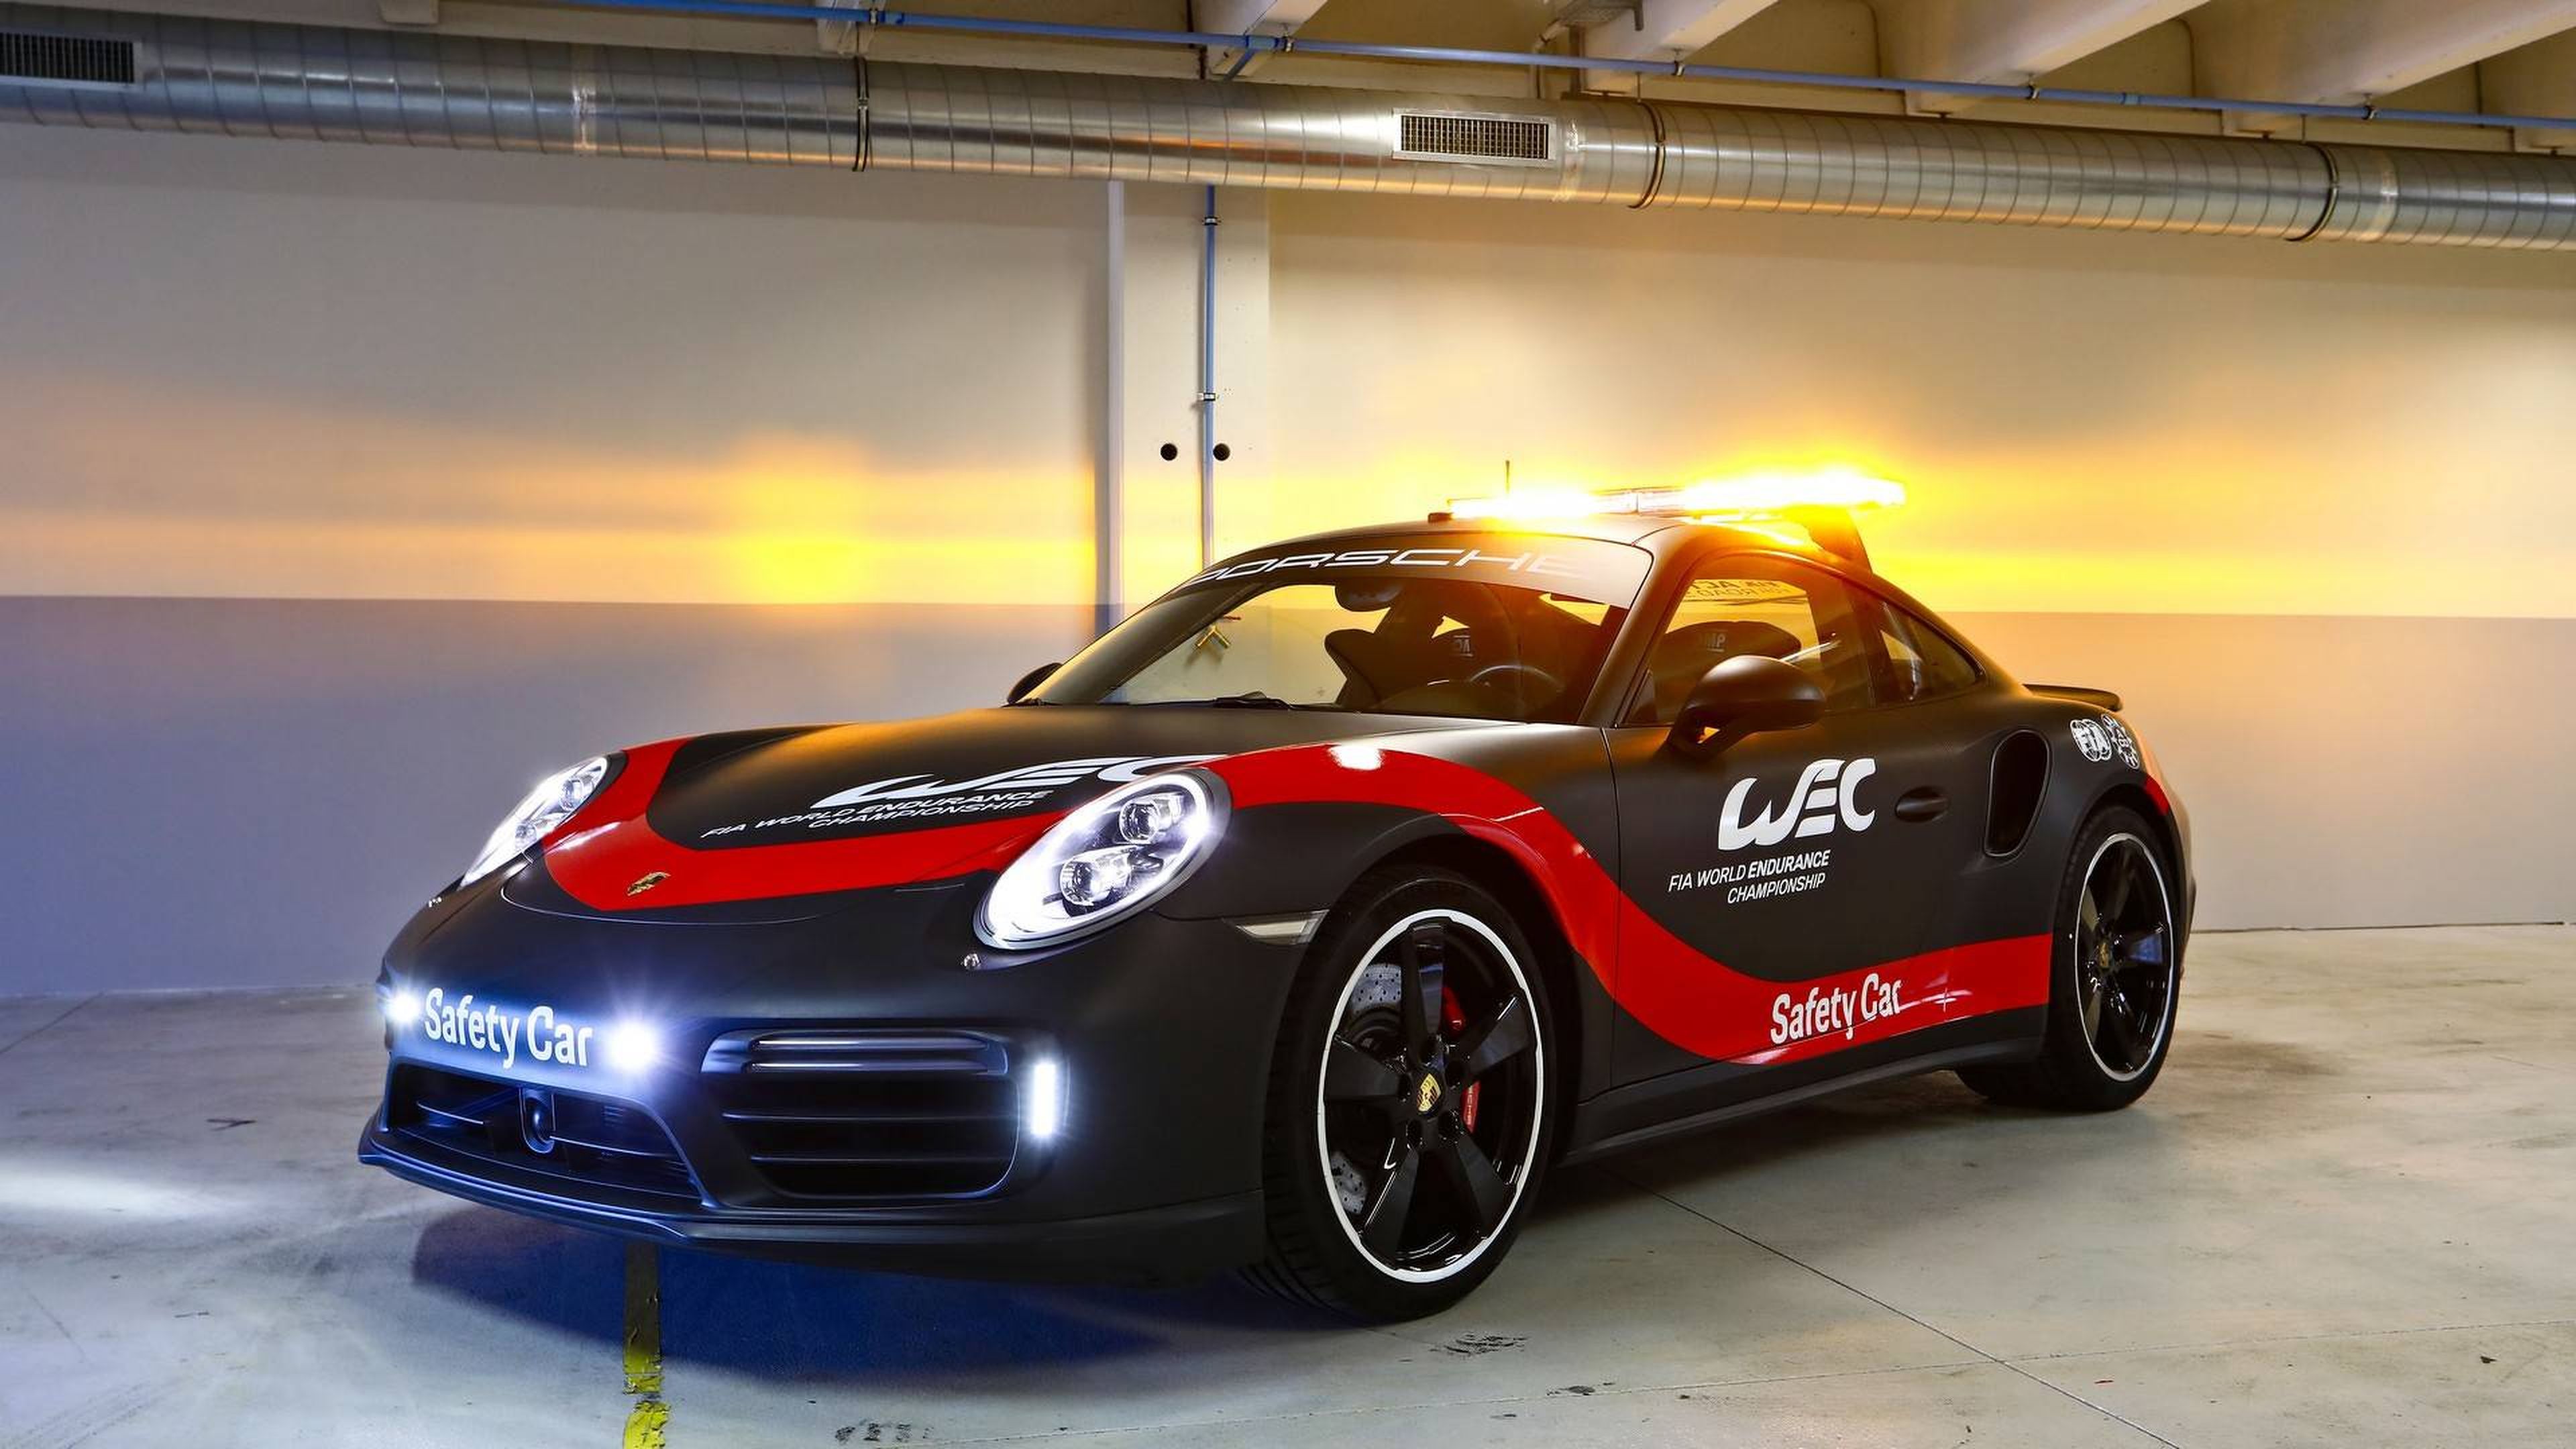 Porsche 911 Safety Car